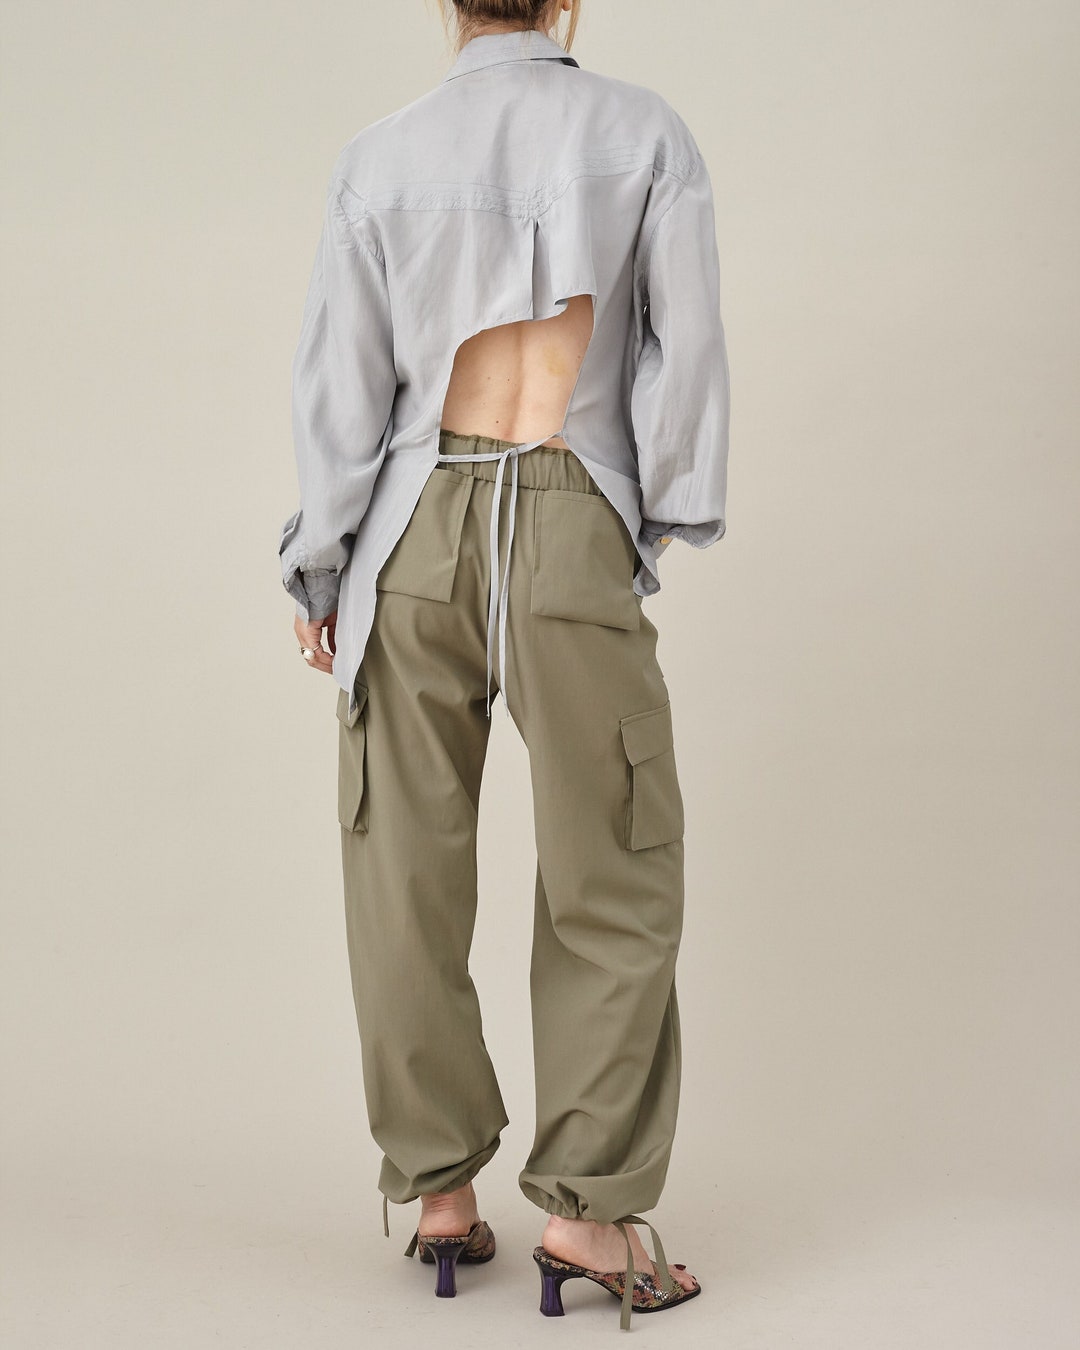 Women's Fashion Designer Camo Baggy Cargo Pants (Plus Size) – International  Women's Clothing - Women's fashion designer plus size clothes